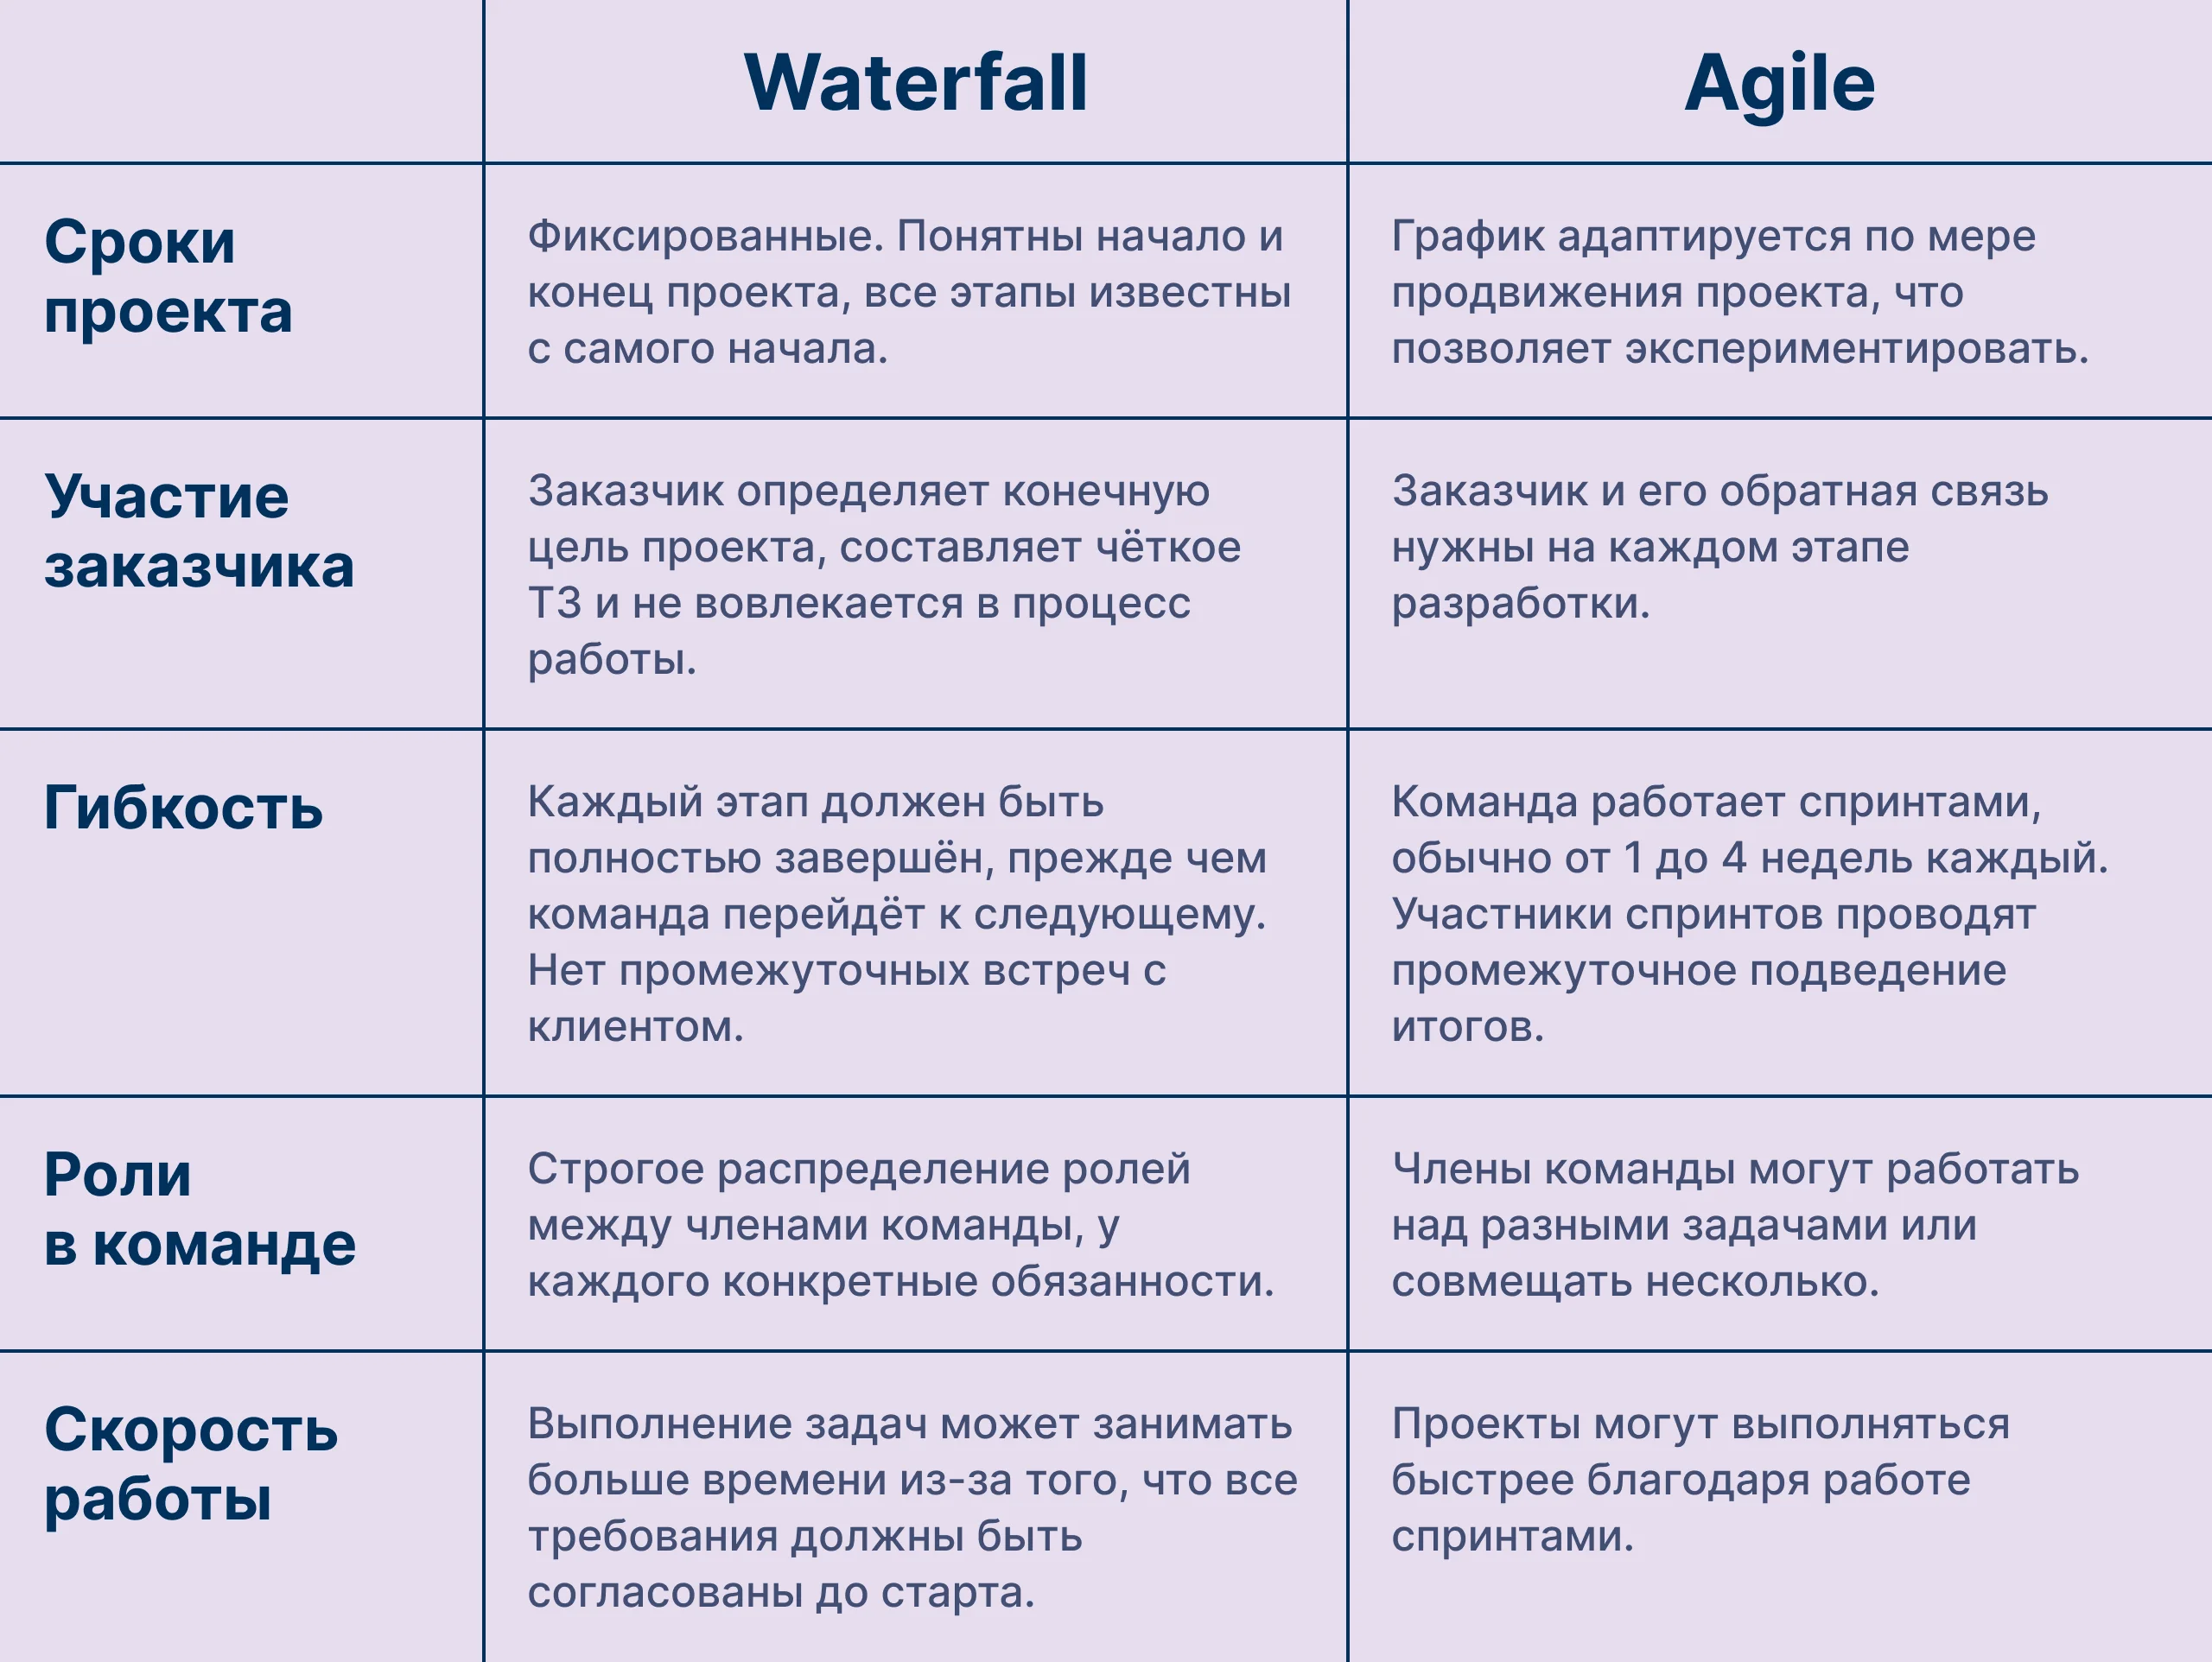 Отличие методологии Agile от Waterfall